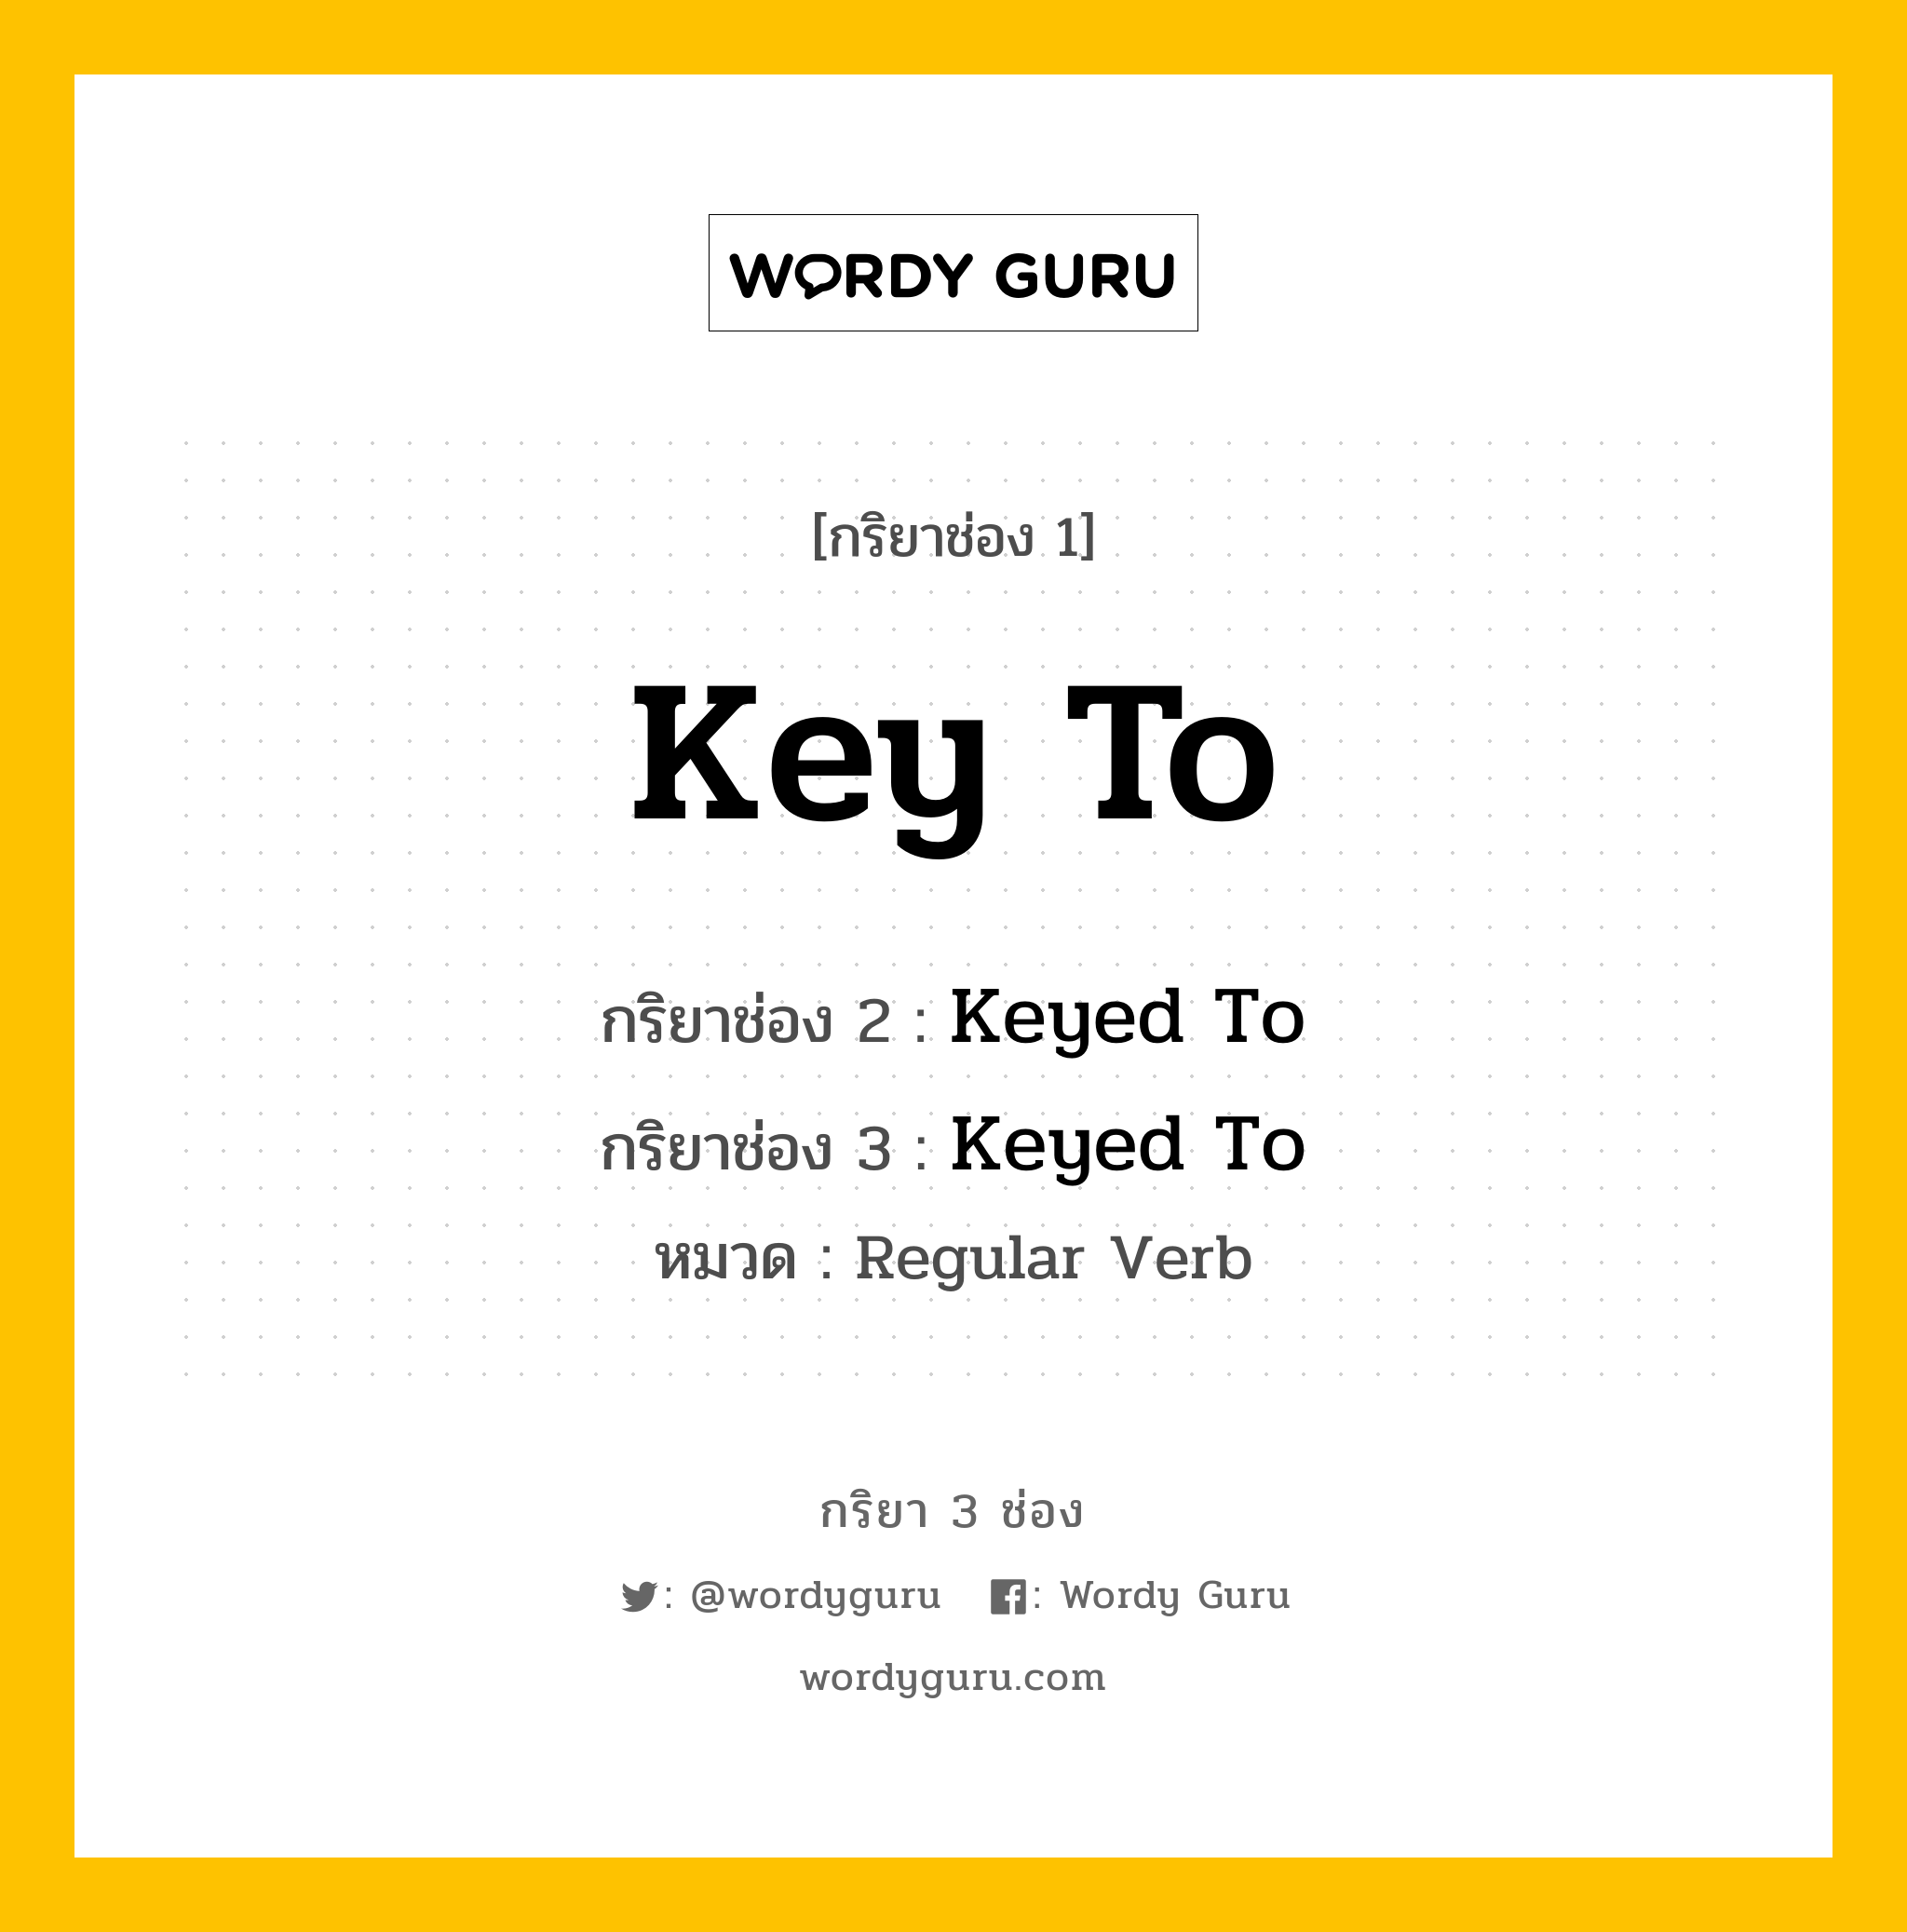 กริยา 3 ช่อง: Key To ช่อง 2 Key To ช่อง 3 คืออะไร, กริยาช่อง 1 Key To กริยาช่อง 2 Keyed To กริยาช่อง 3 Keyed To หมวด Regular Verb หมวด Regular Verb